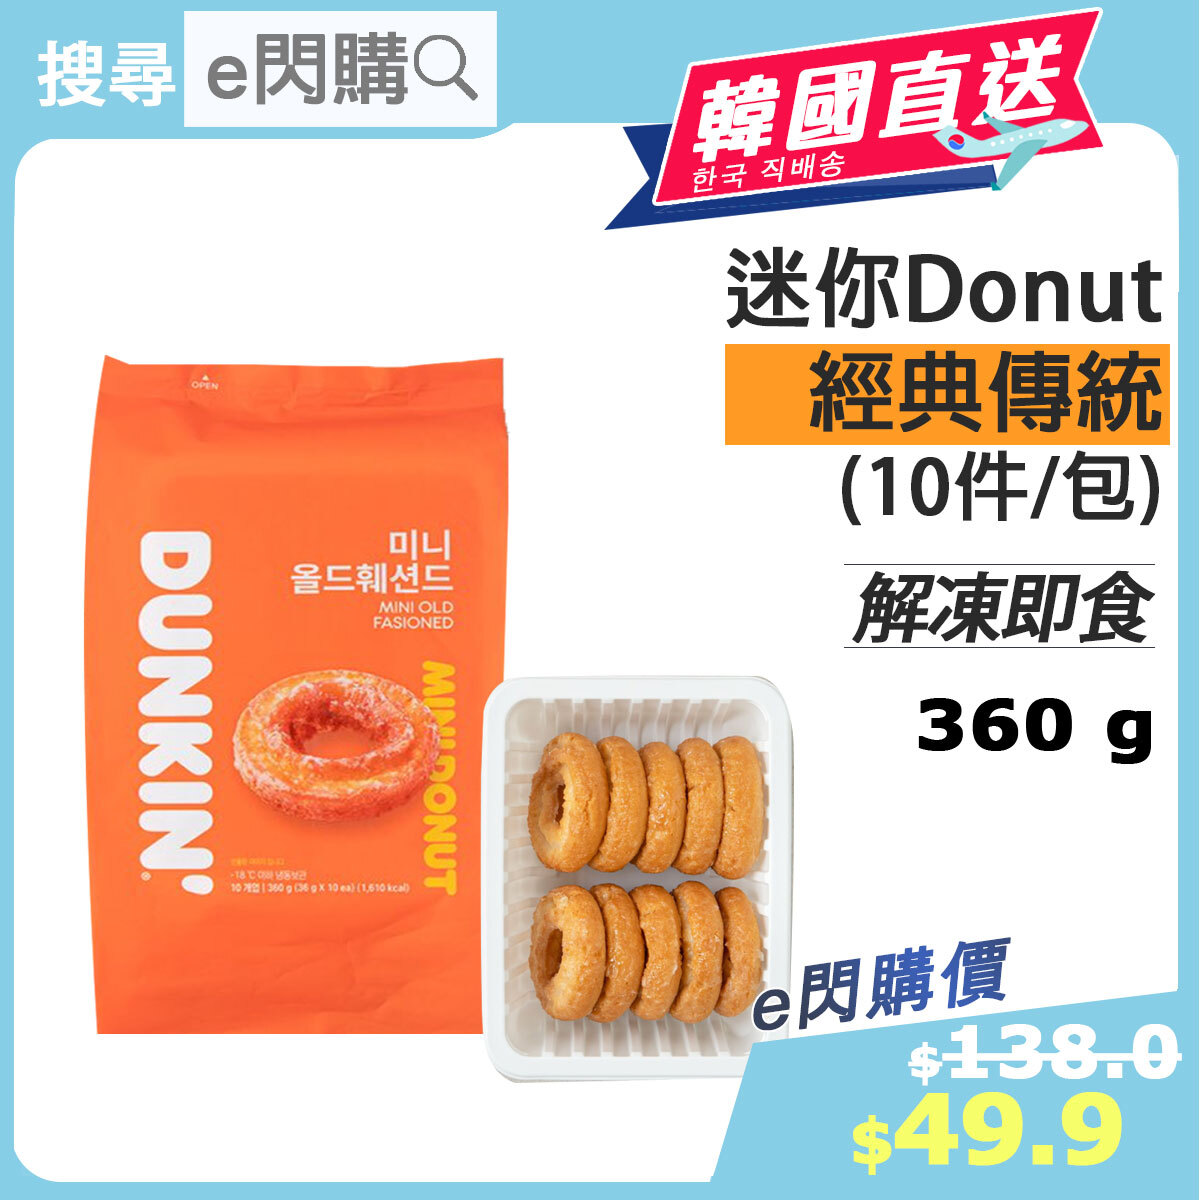 [韓] · ❤️e閃購❤️ 韓國迷你Donut 10件裝 (360g± 經典冬甩mini) 急凍甜甜圈